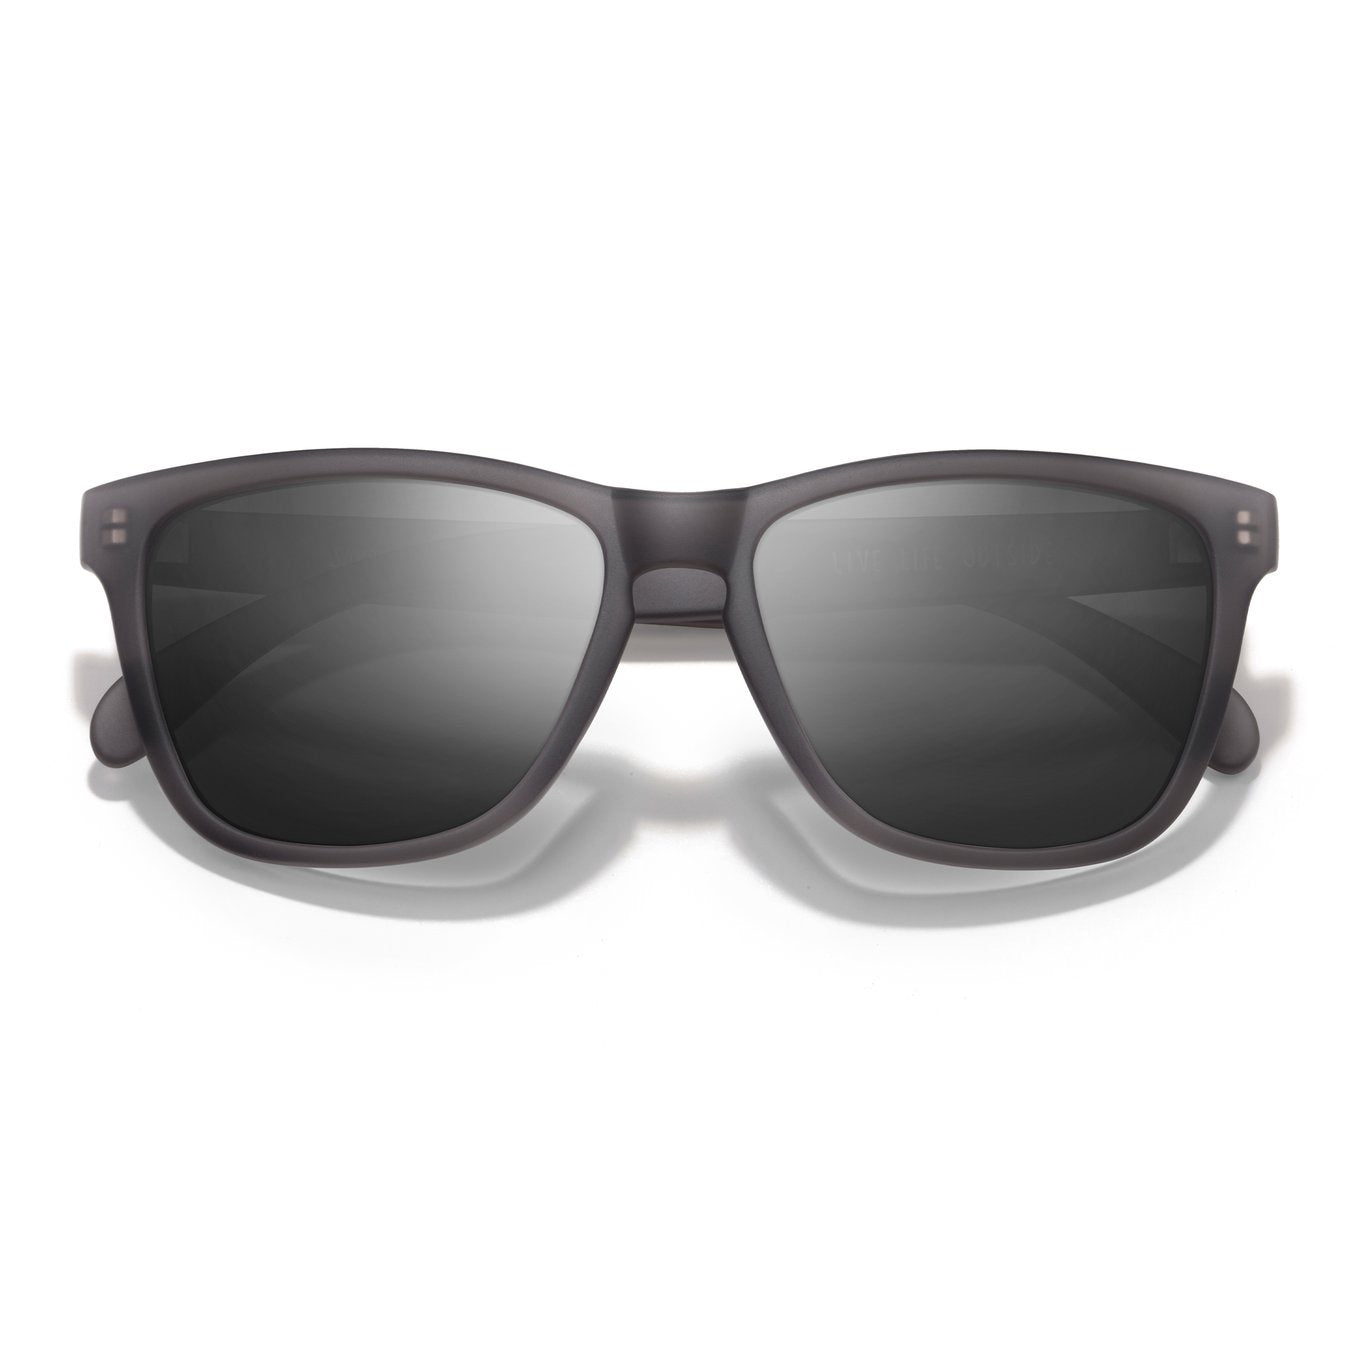 SUNSKI Sunglasses - Headland Grey Black